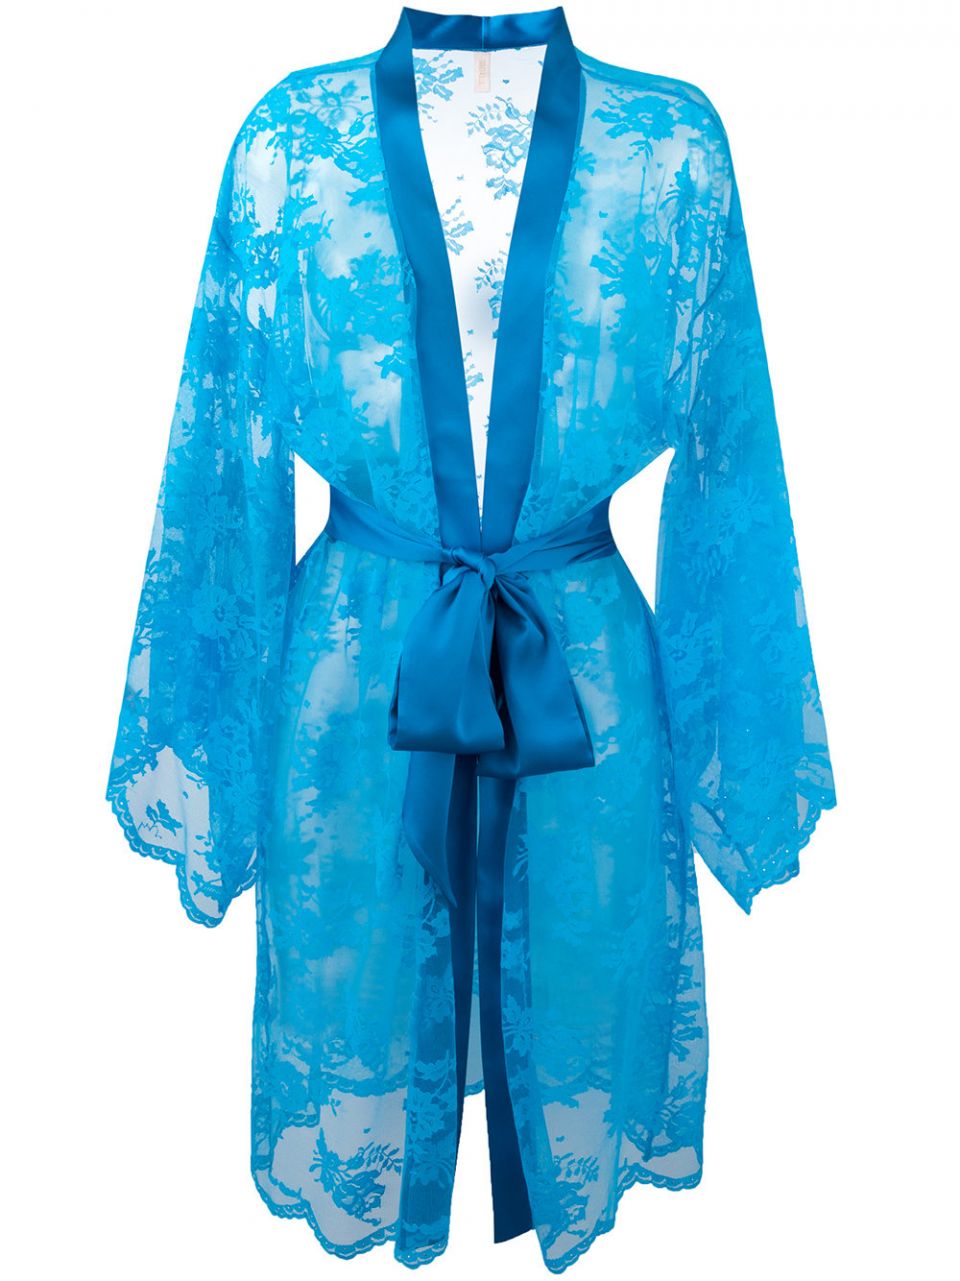 Turquoise Lace Kimono